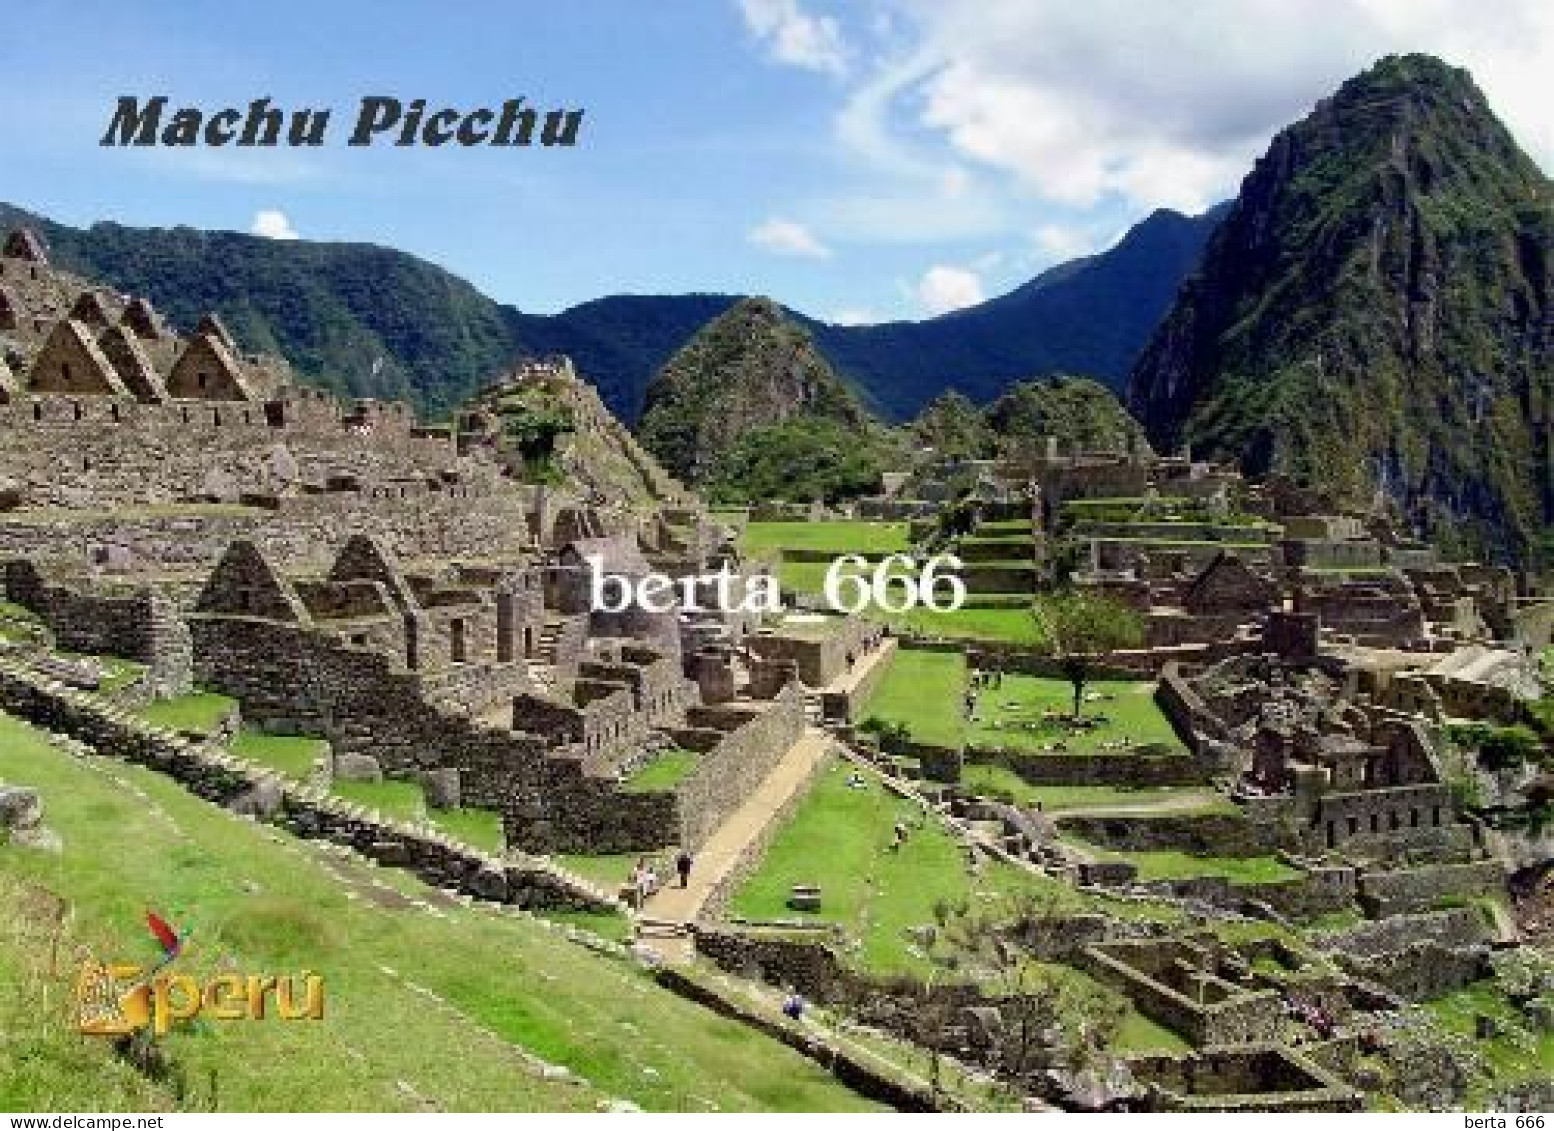 Peru Machu Picchu UNESCO New Postcard - Perú